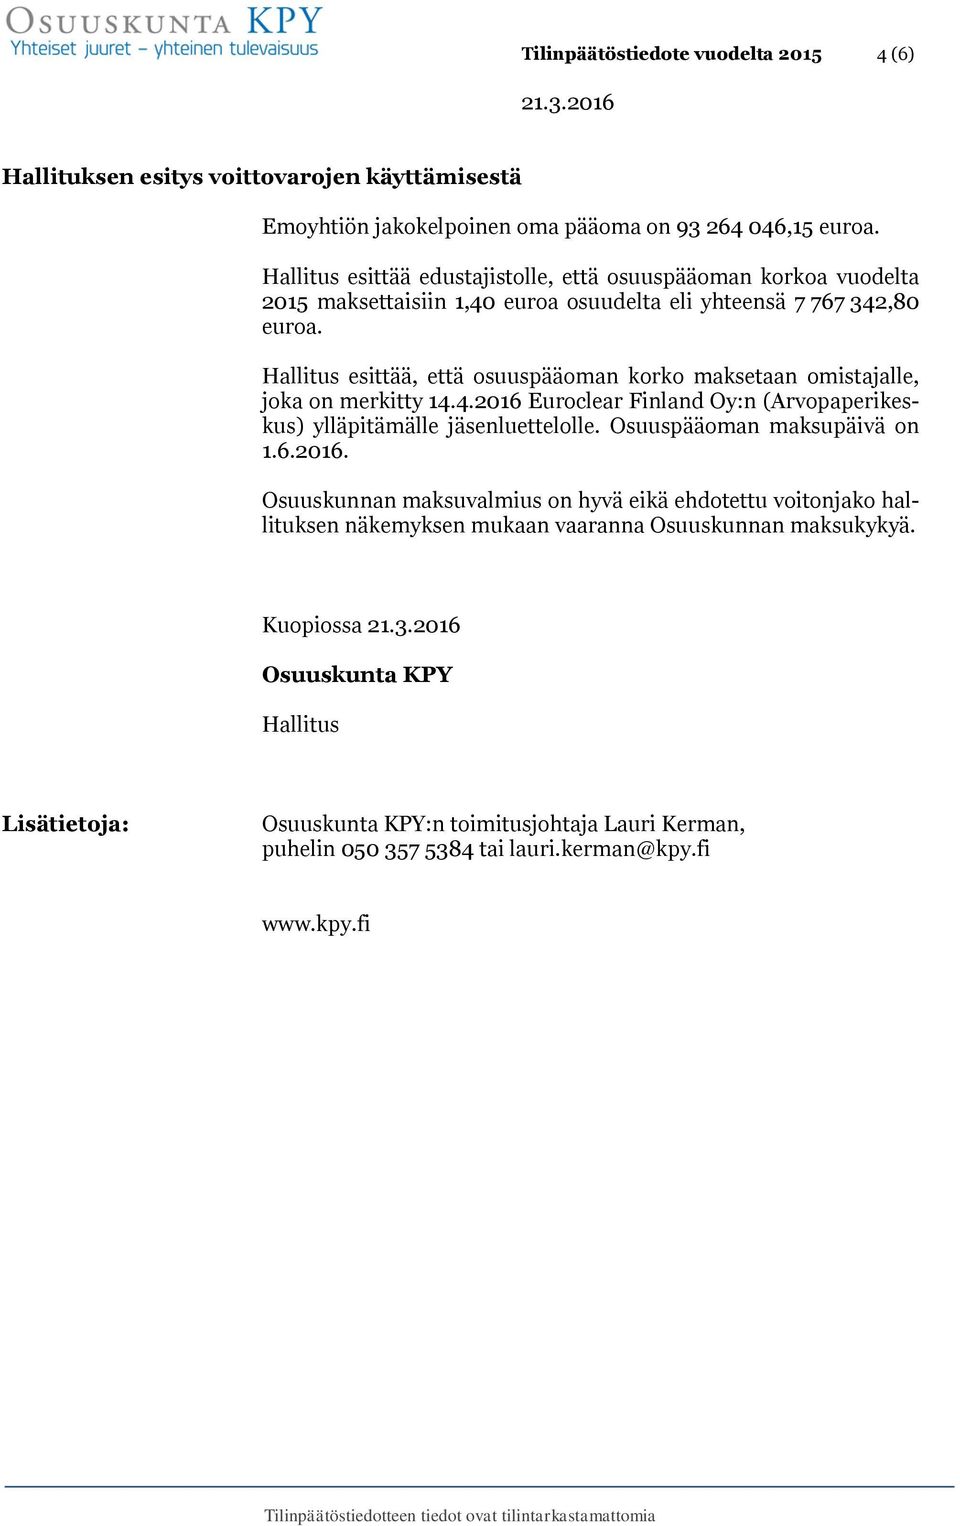 Hallitus esittää, että osuuspääoman korko maksetaan omistajalle, joka on merkitty 14.4.2016 Euroclear Finland Oy:n (Arvopaperikeskus) ylläpitämälle jäsenluettelolle.